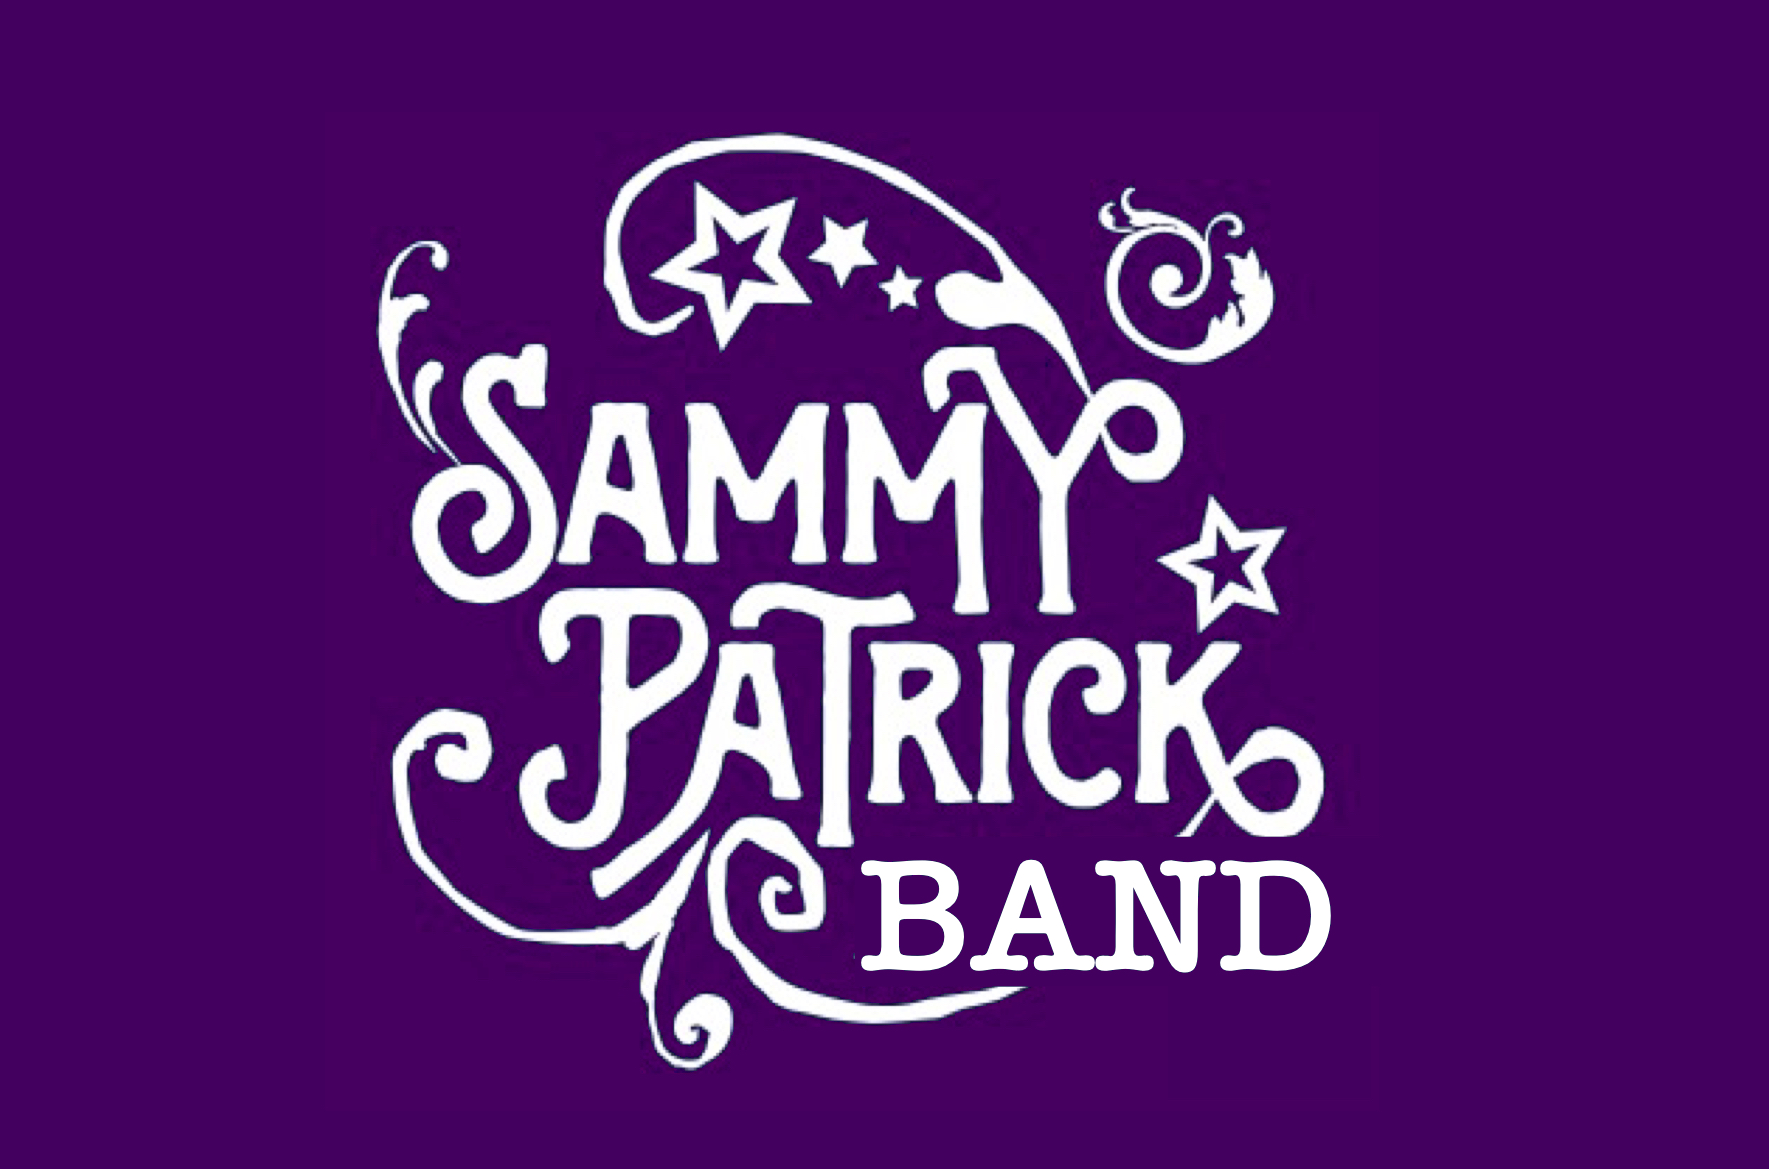 SammyPatrick.com